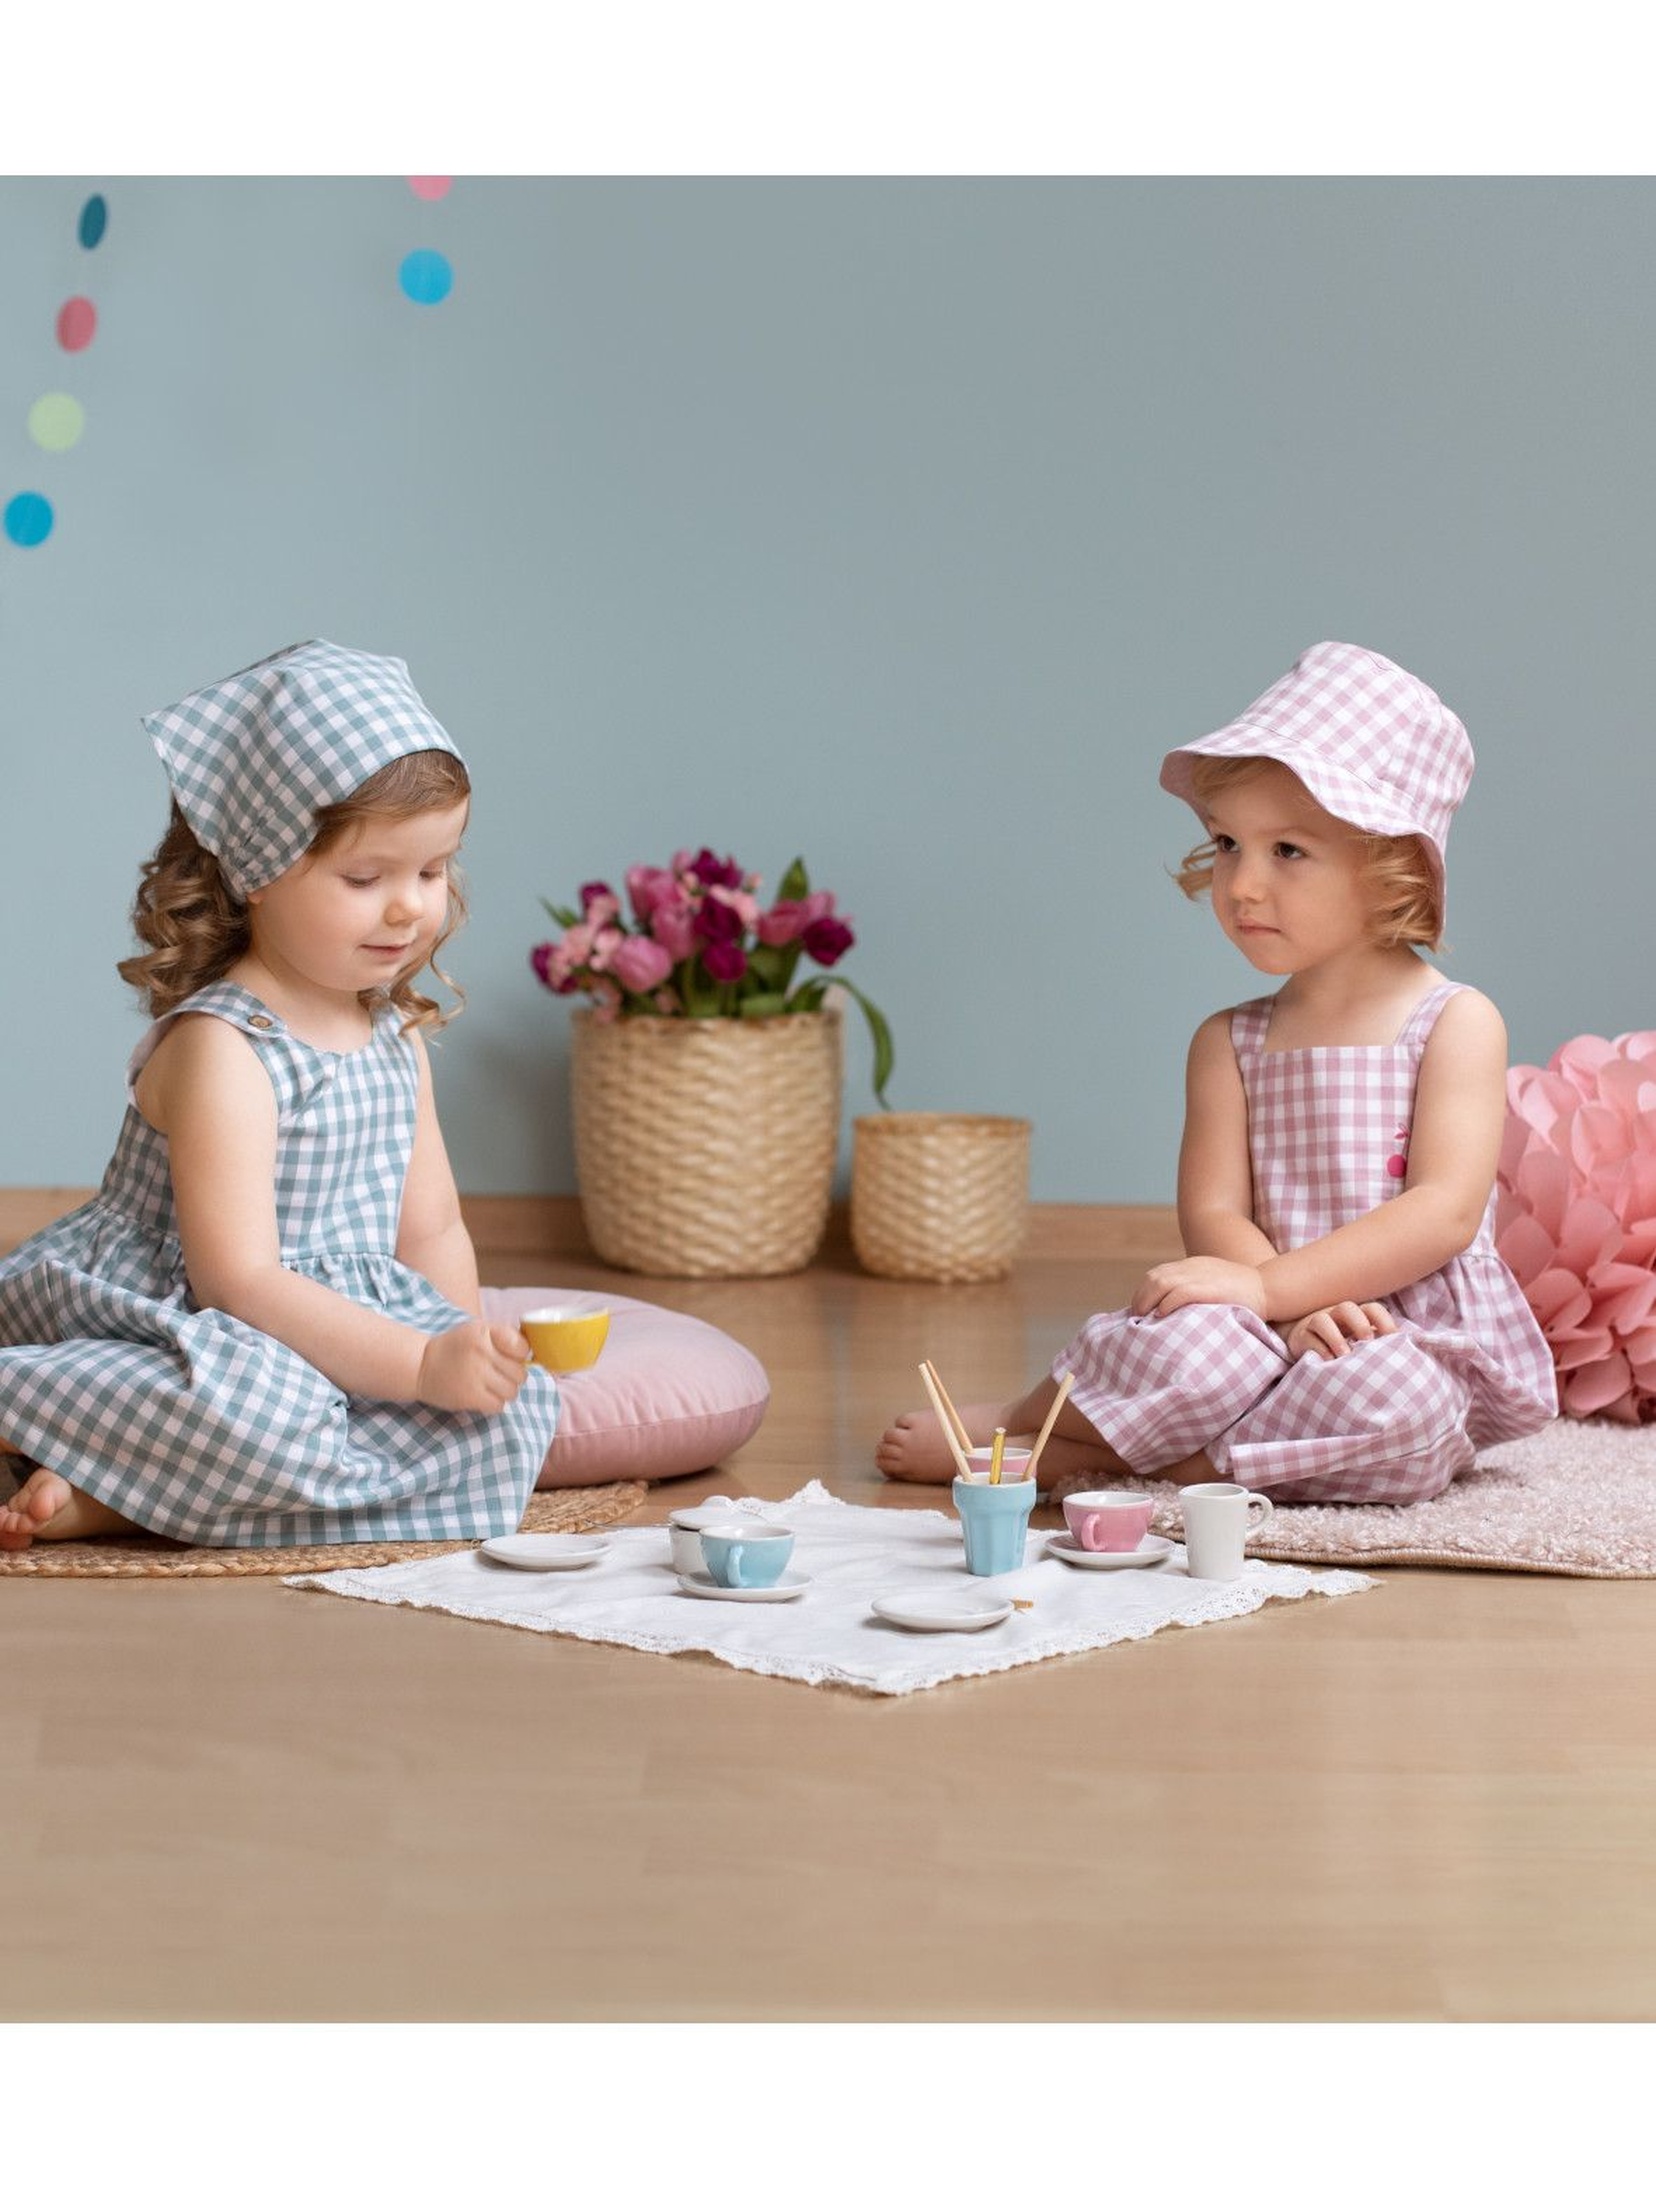 Bawełniany kombinezon dziewczęcy w różowo-białą kratkę